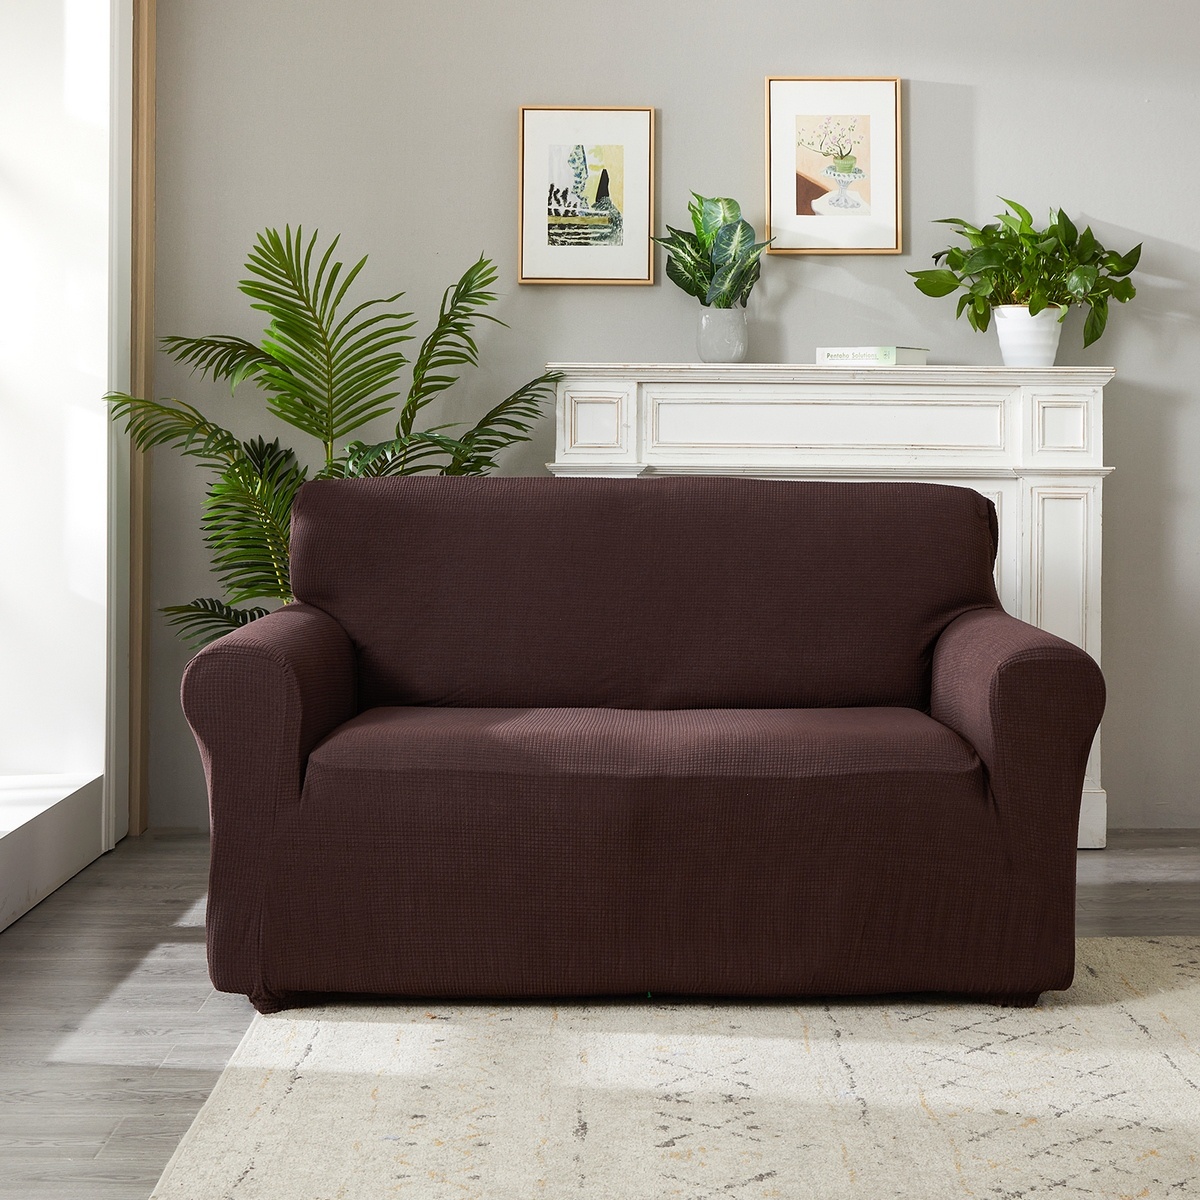 4Home Magic clean elasztikus kanapéhuzat sötétbarna, 190 - 230 cm